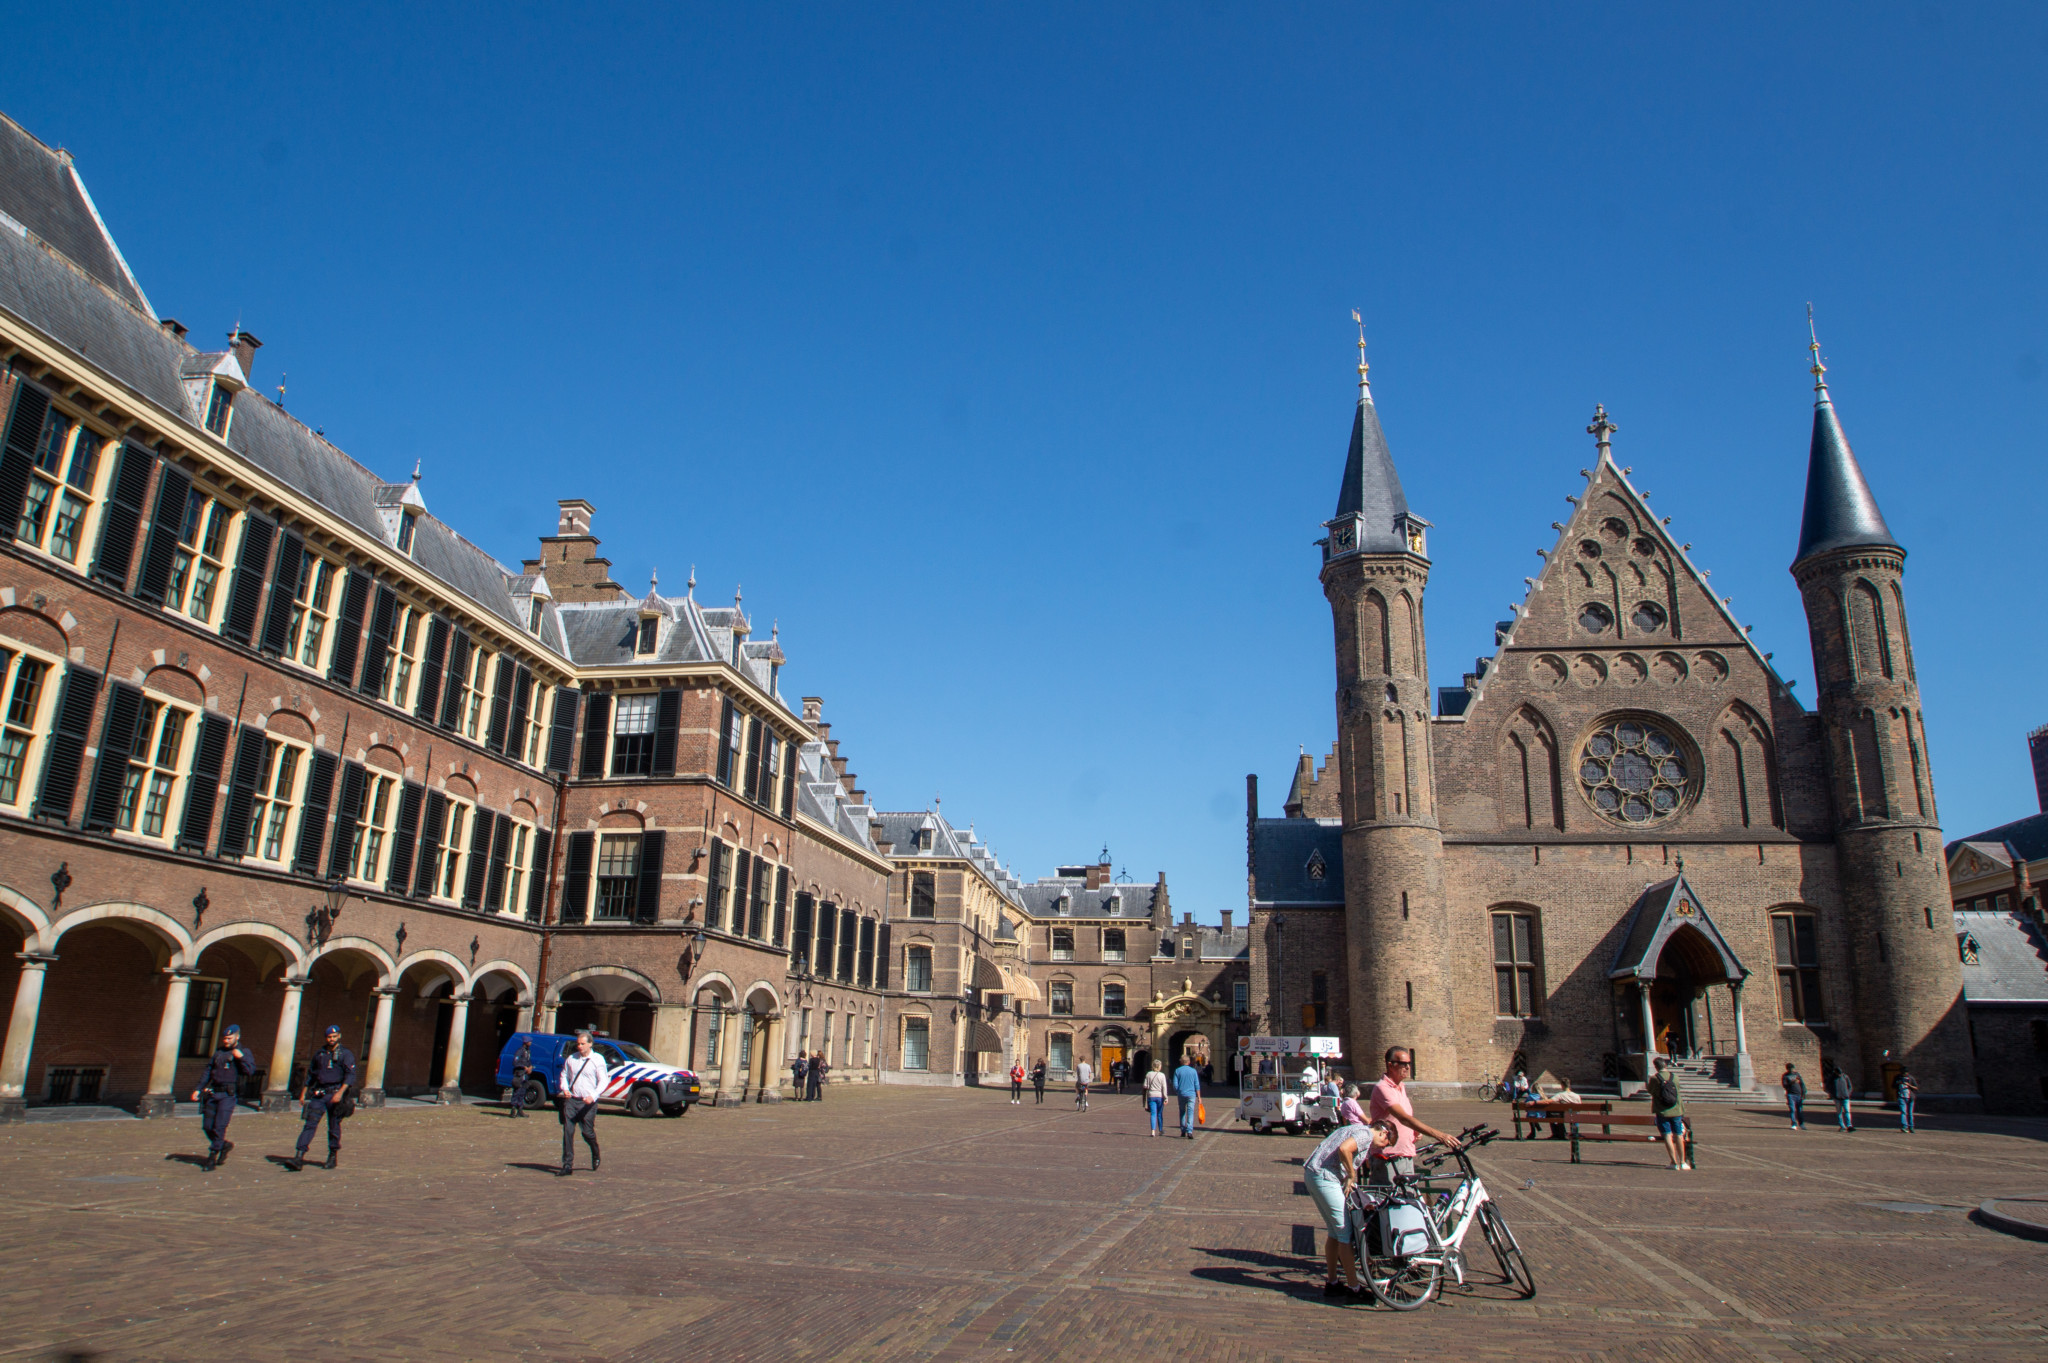 Der Binnenhof gehört zu den wichtigsten Den Haag Sehenswürdigkeiten